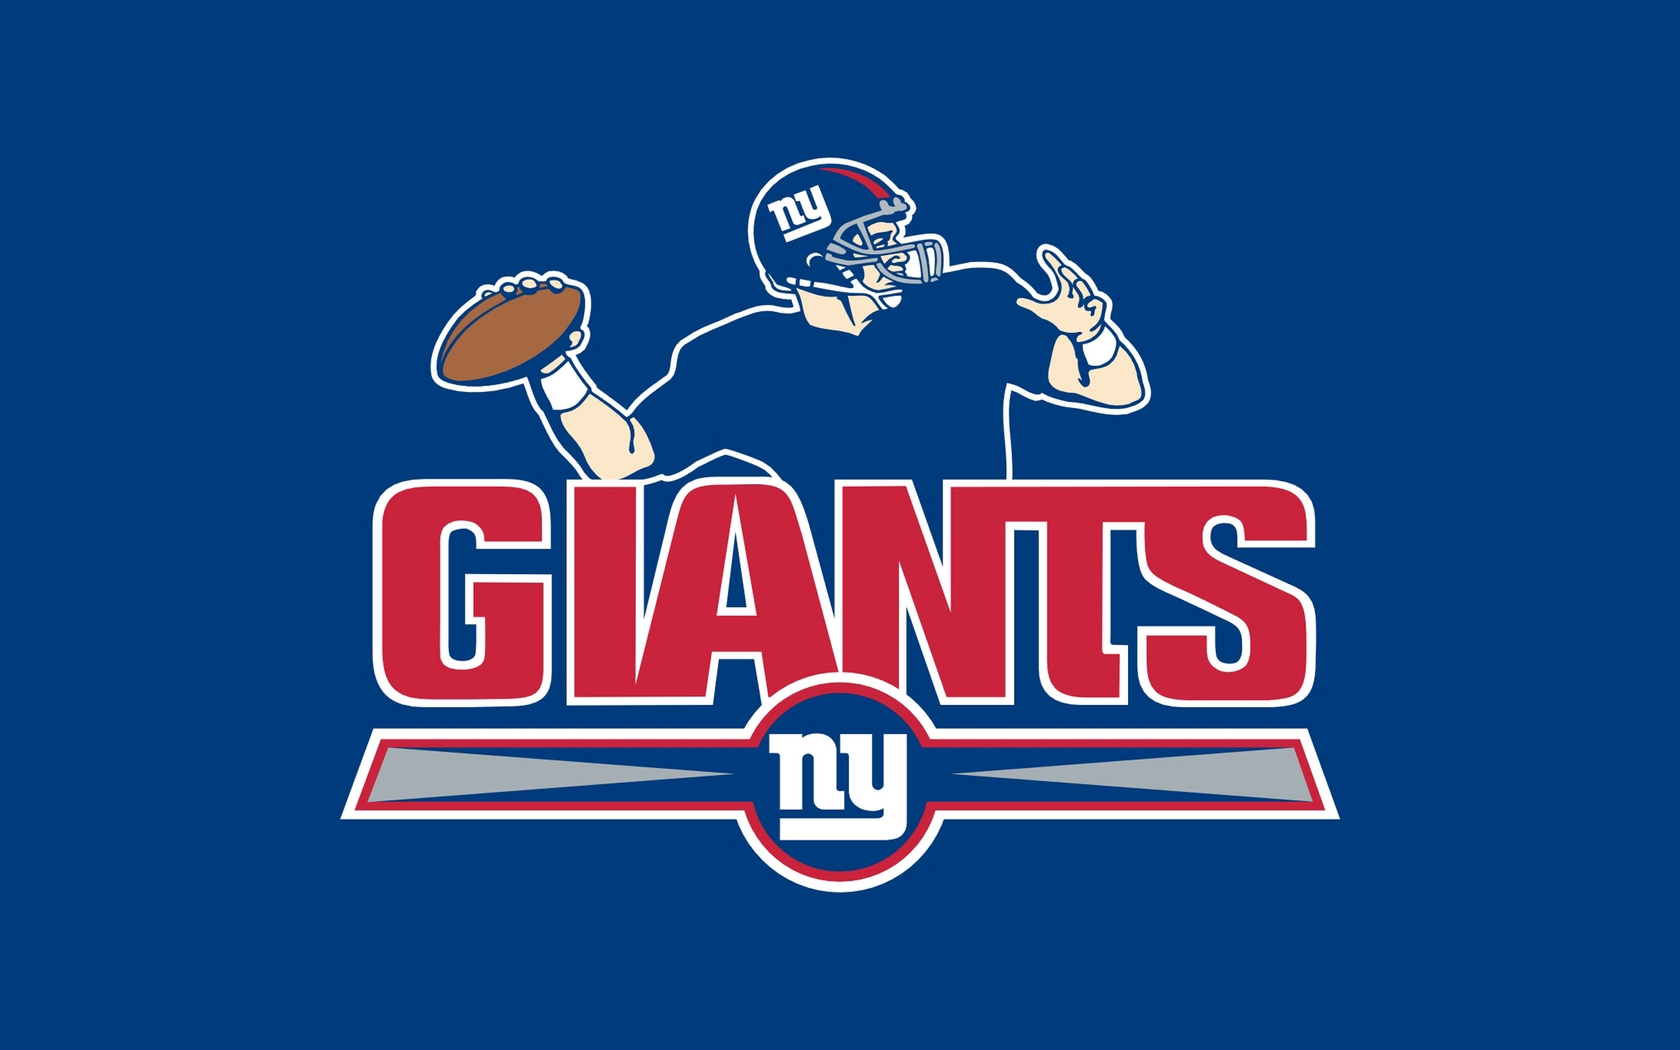 More New York Giants Wallpaper